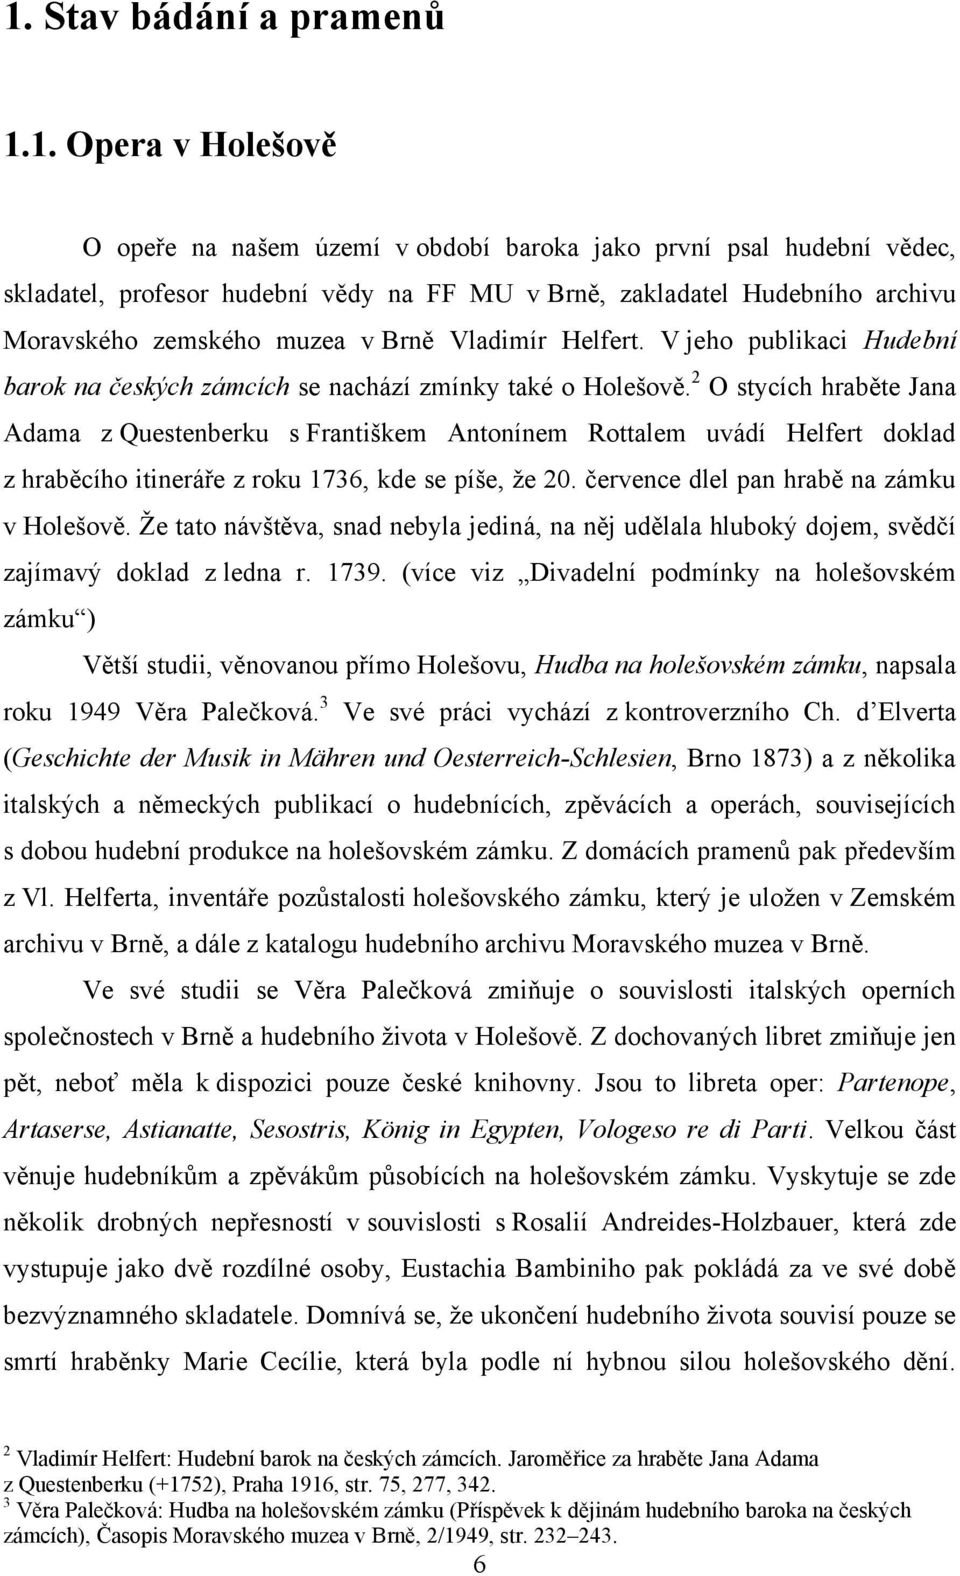 2 O stycích hraběte Jana Adama z Questenberku s Františkem Antonínem Rottalem uvádí Helfert doklad z hraběcího itineráře z roku 1736, kde se píše, ţe 20. července dlel pan hrabě na zámku v Holešově.